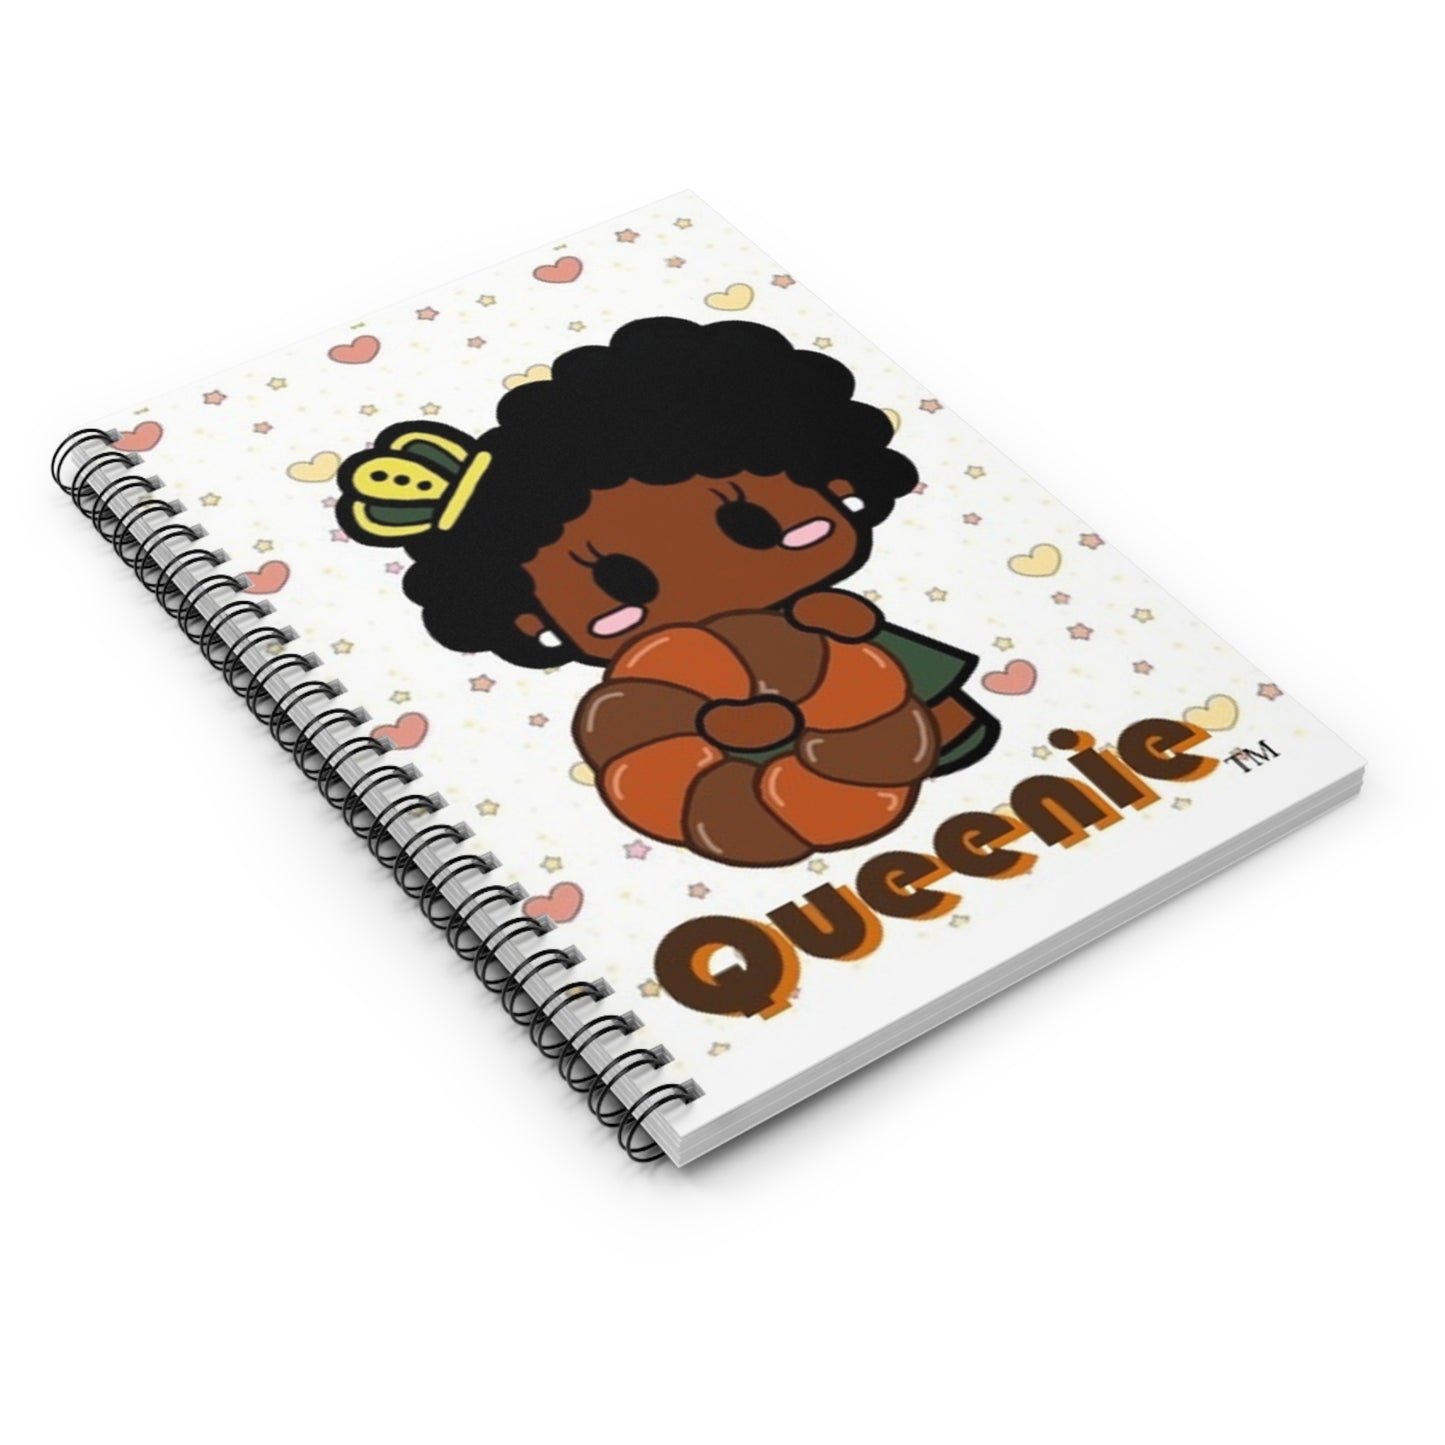 Copy of Queenie Pumpkin Spiral donut Notebook